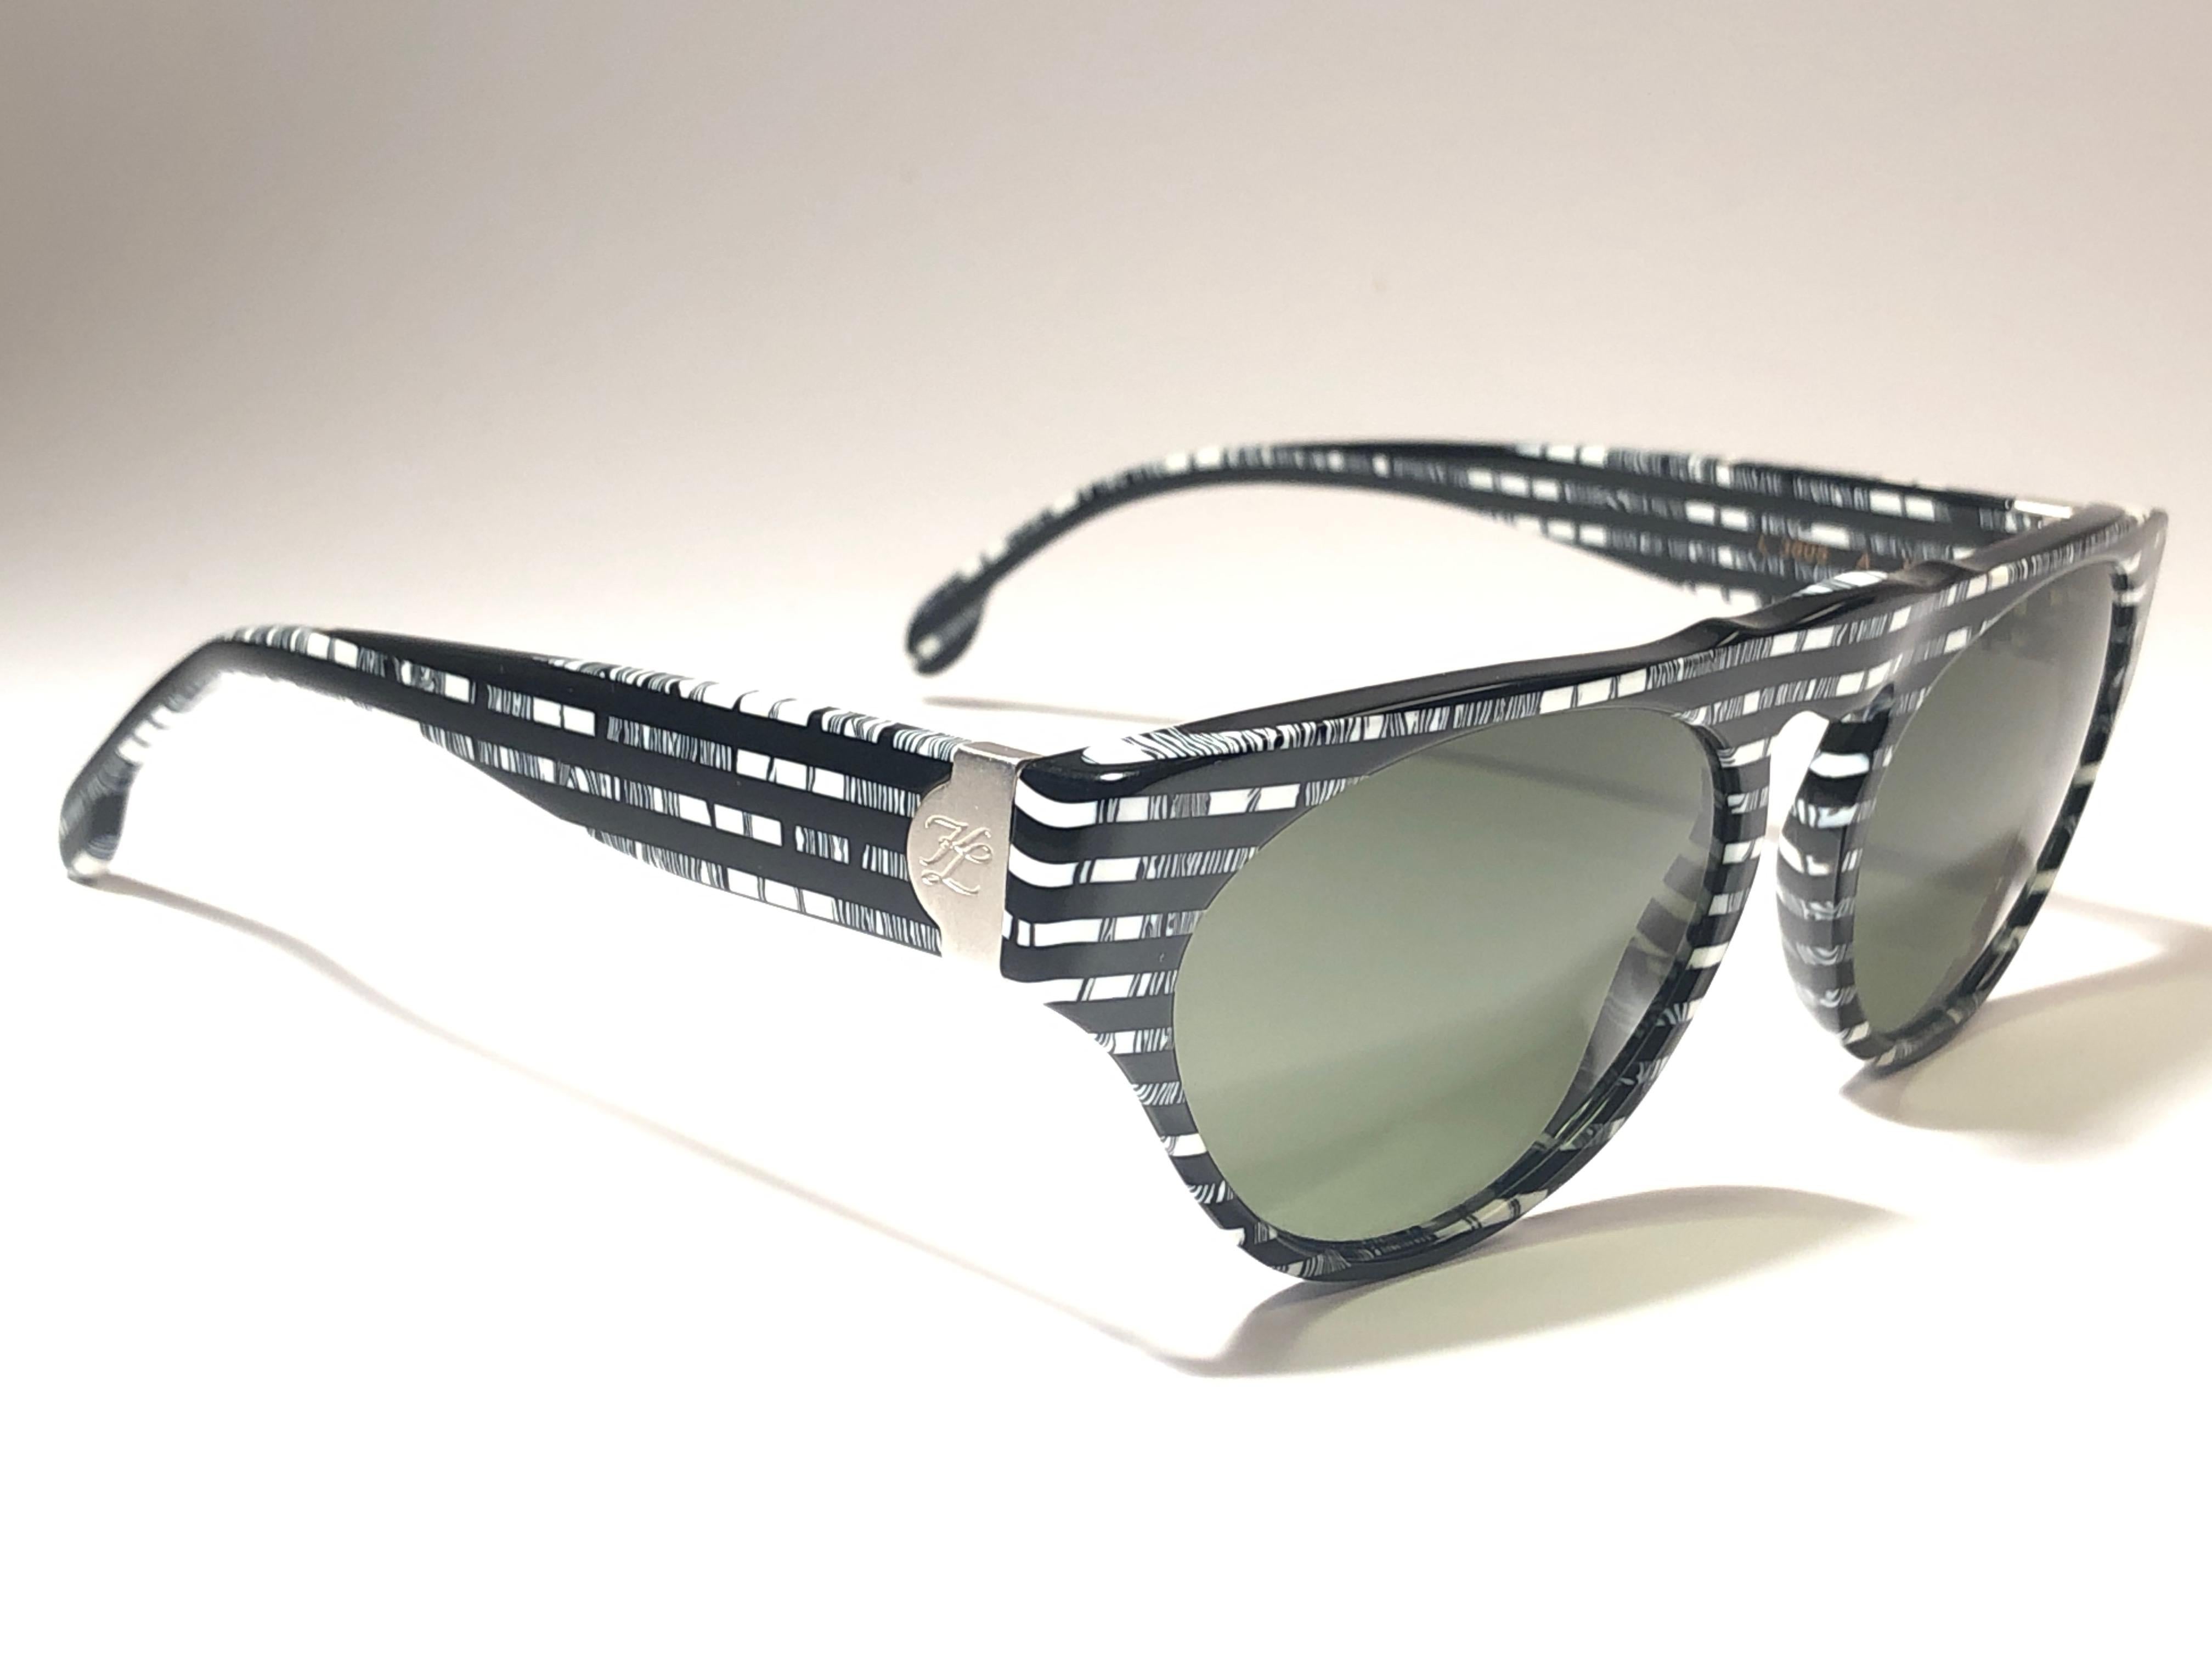 Erstaunlich Paar New vintage 1980's L3605 Karl Lagerfeld schwarz & weiß schwarzes Mosaik Sonnenbrille ein Paar graue Gläser umrahmt.
 
 Neu, nie getragen oder ausgestellt. Dieses Paar kann aufgrund der Lagerung leichte Gebrauchsspuren aufweisen. Ein